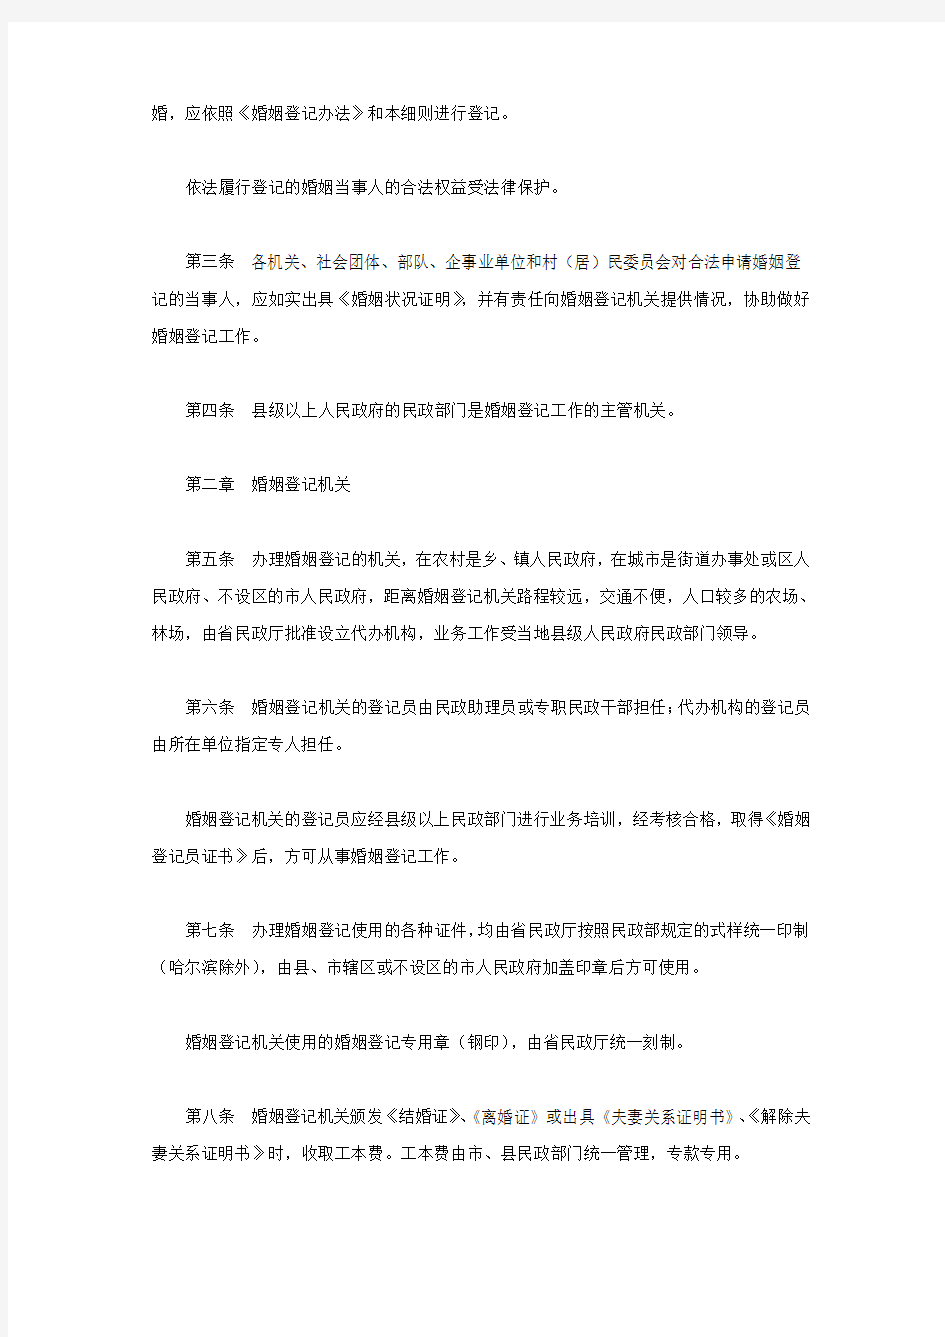 黑龙江省实施《婚姻登记办法》细则